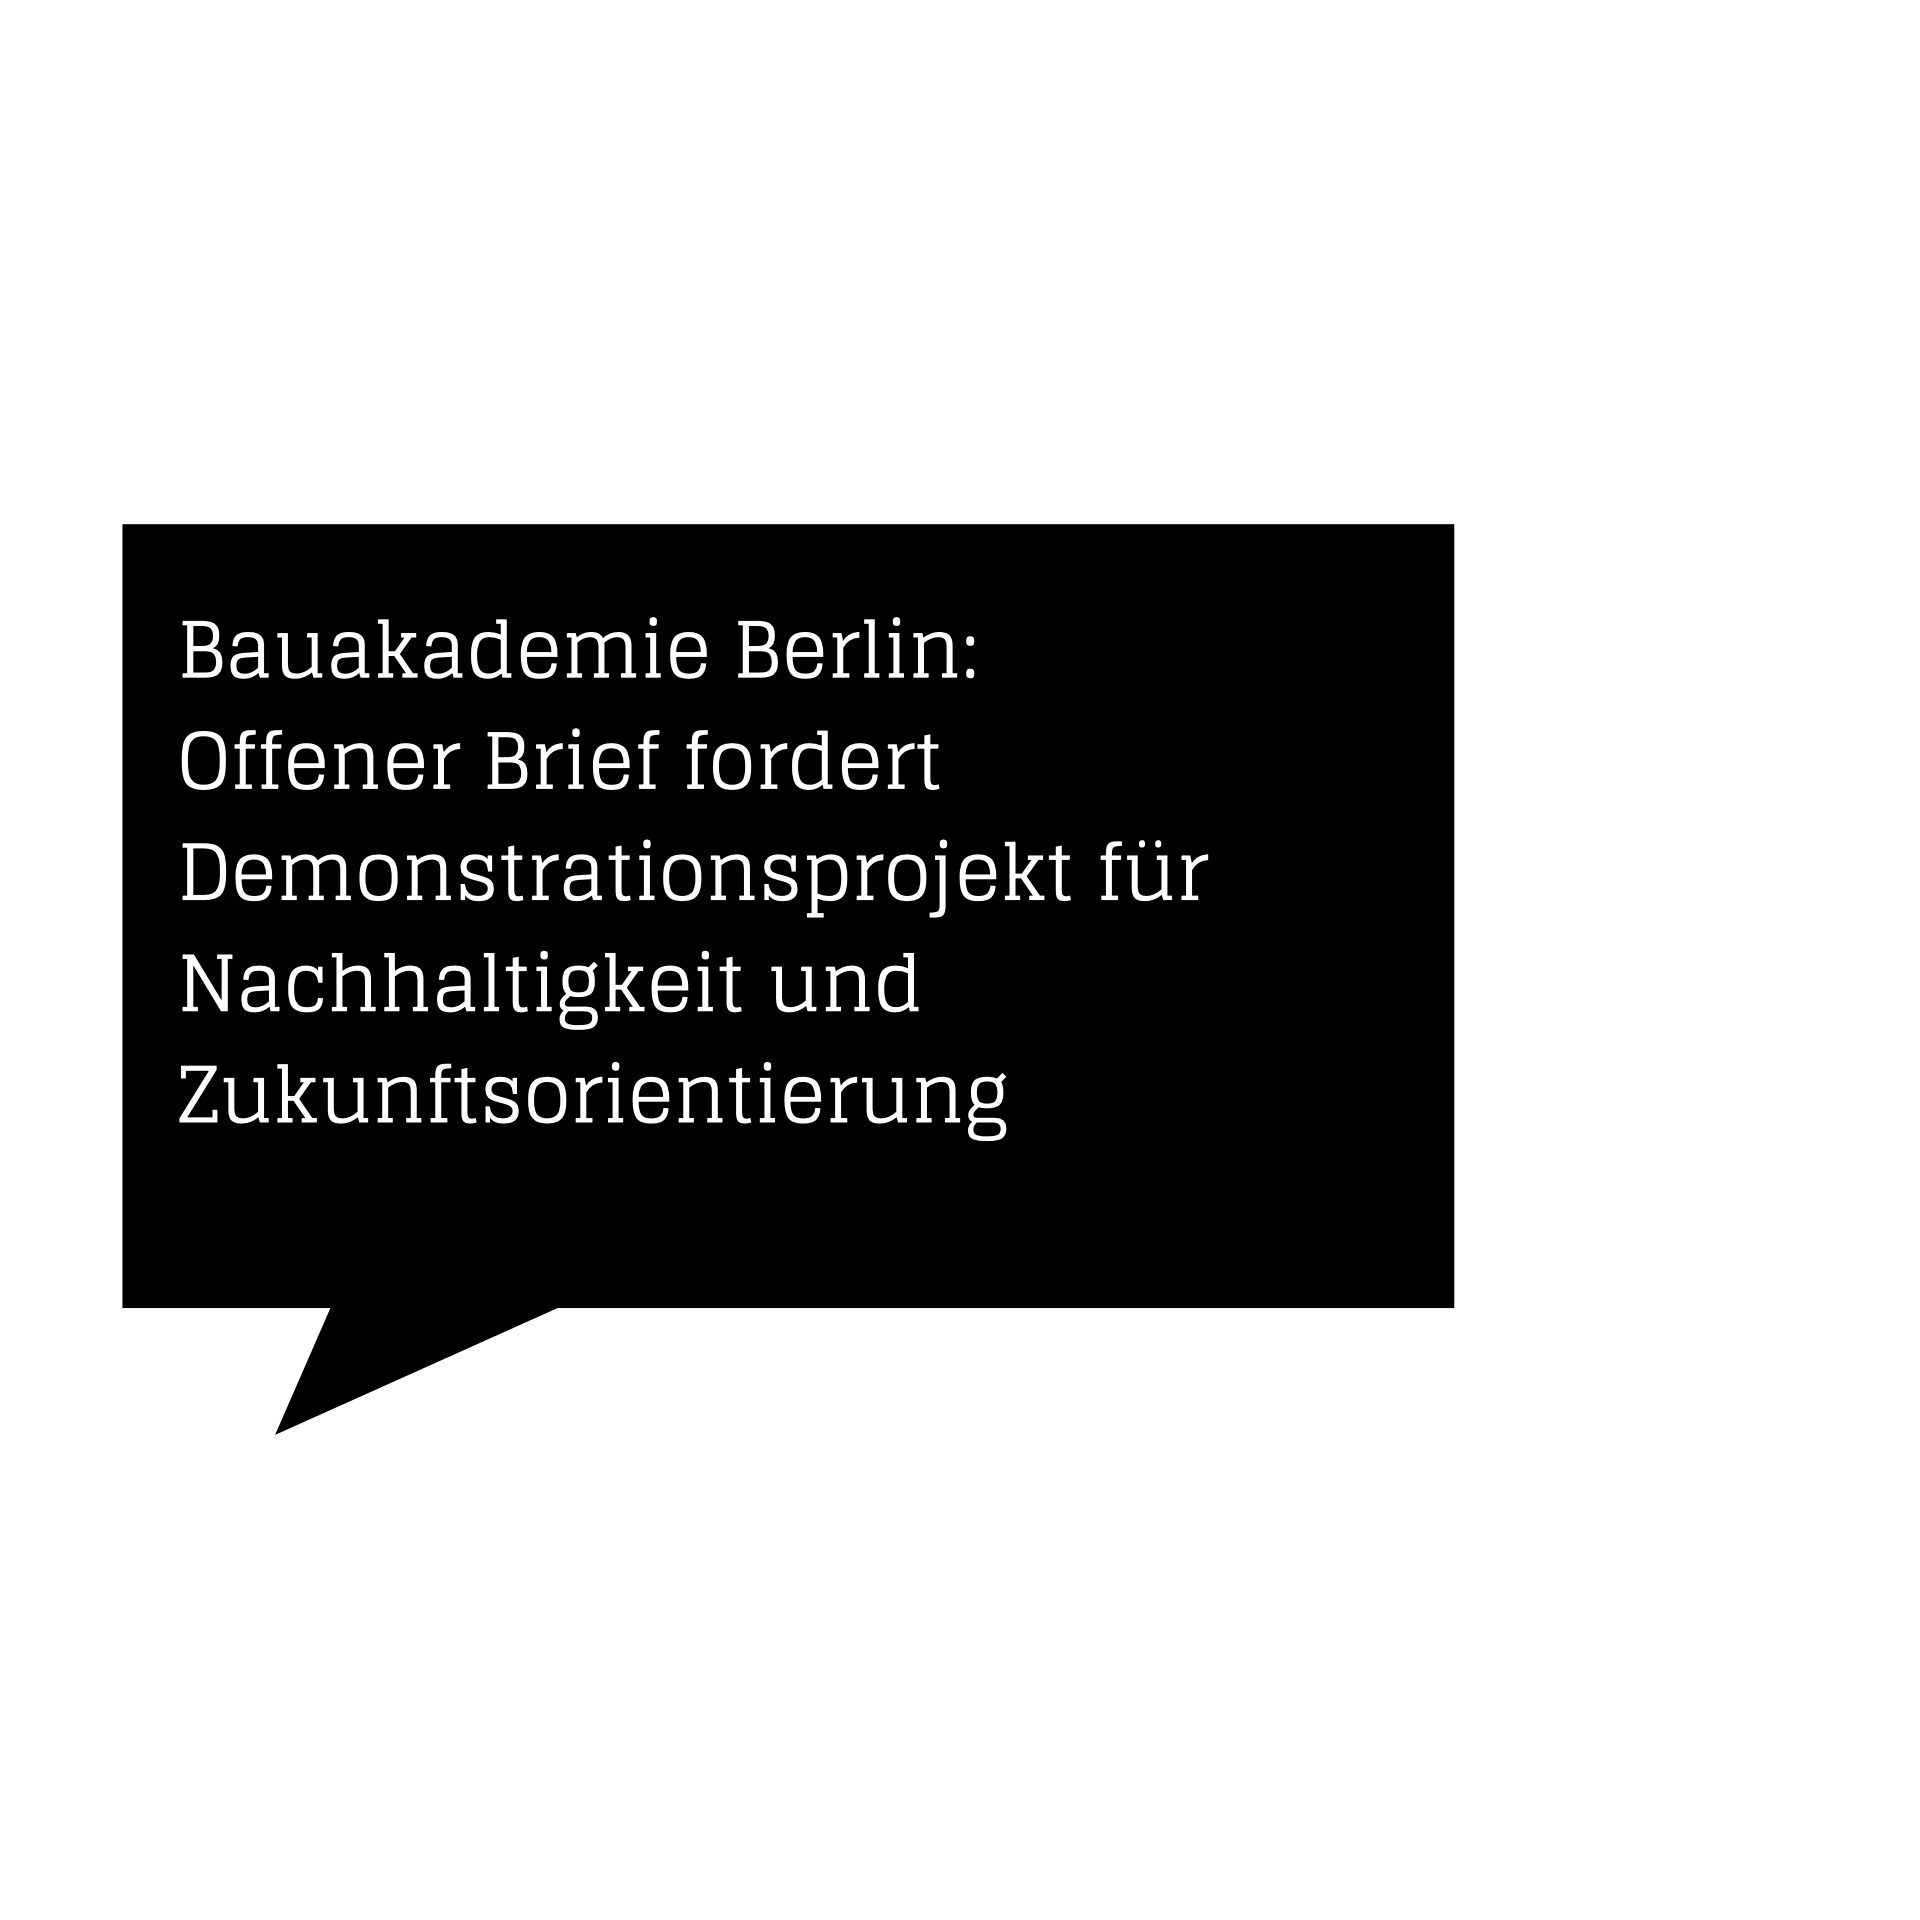 Bauakademie Berlin: Offener Brief fordert Demonstrationsprojekt für Nachhaltigkeit und Zukunftsorientierung (Textgrafik: architekturmeldungen.de)